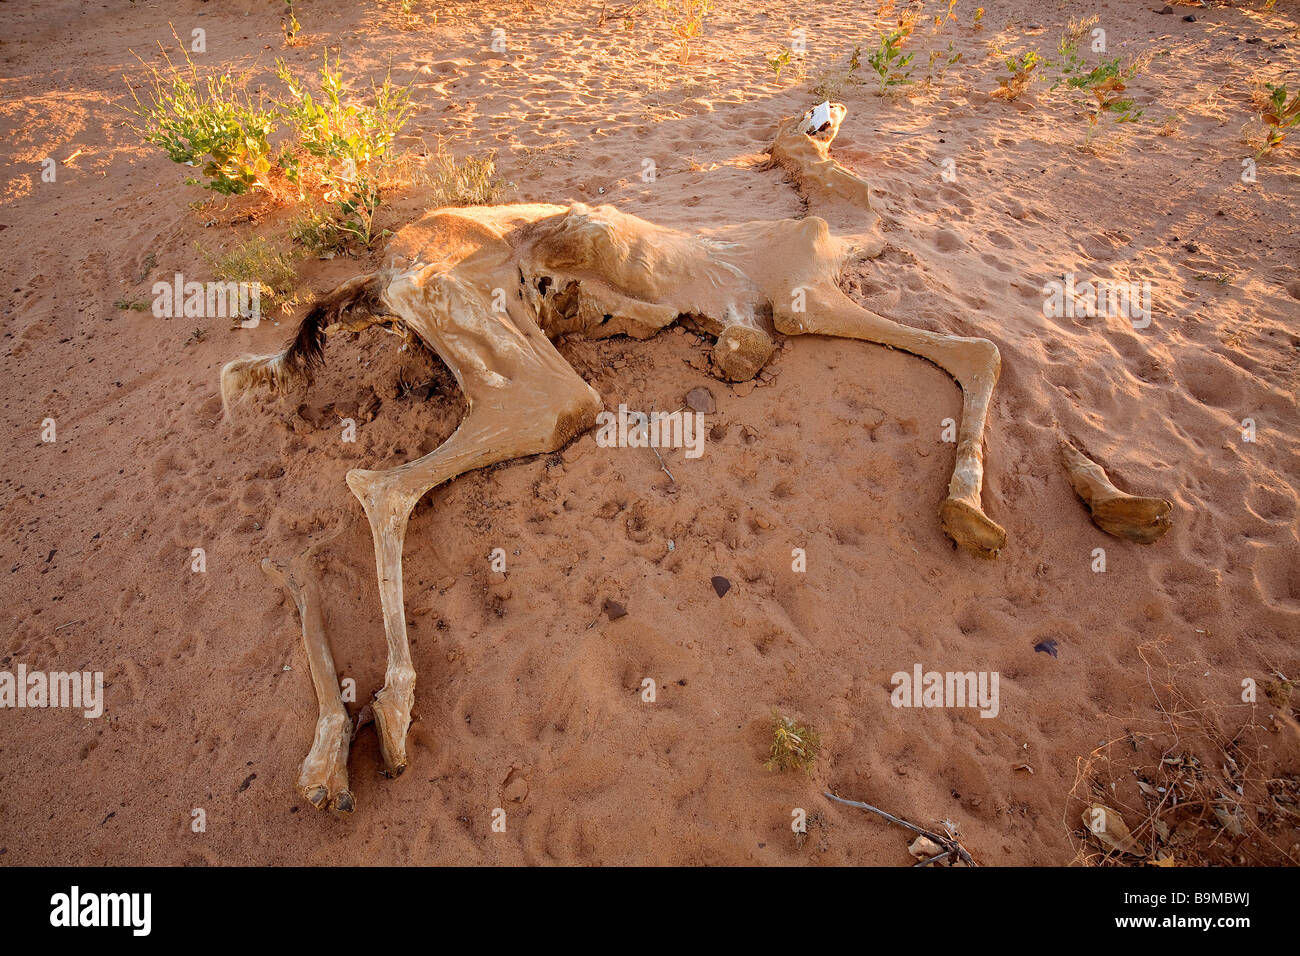 Mauritania, Adrar, Chinguetti area, Leguerara, remains of a dromadery Stock Photo